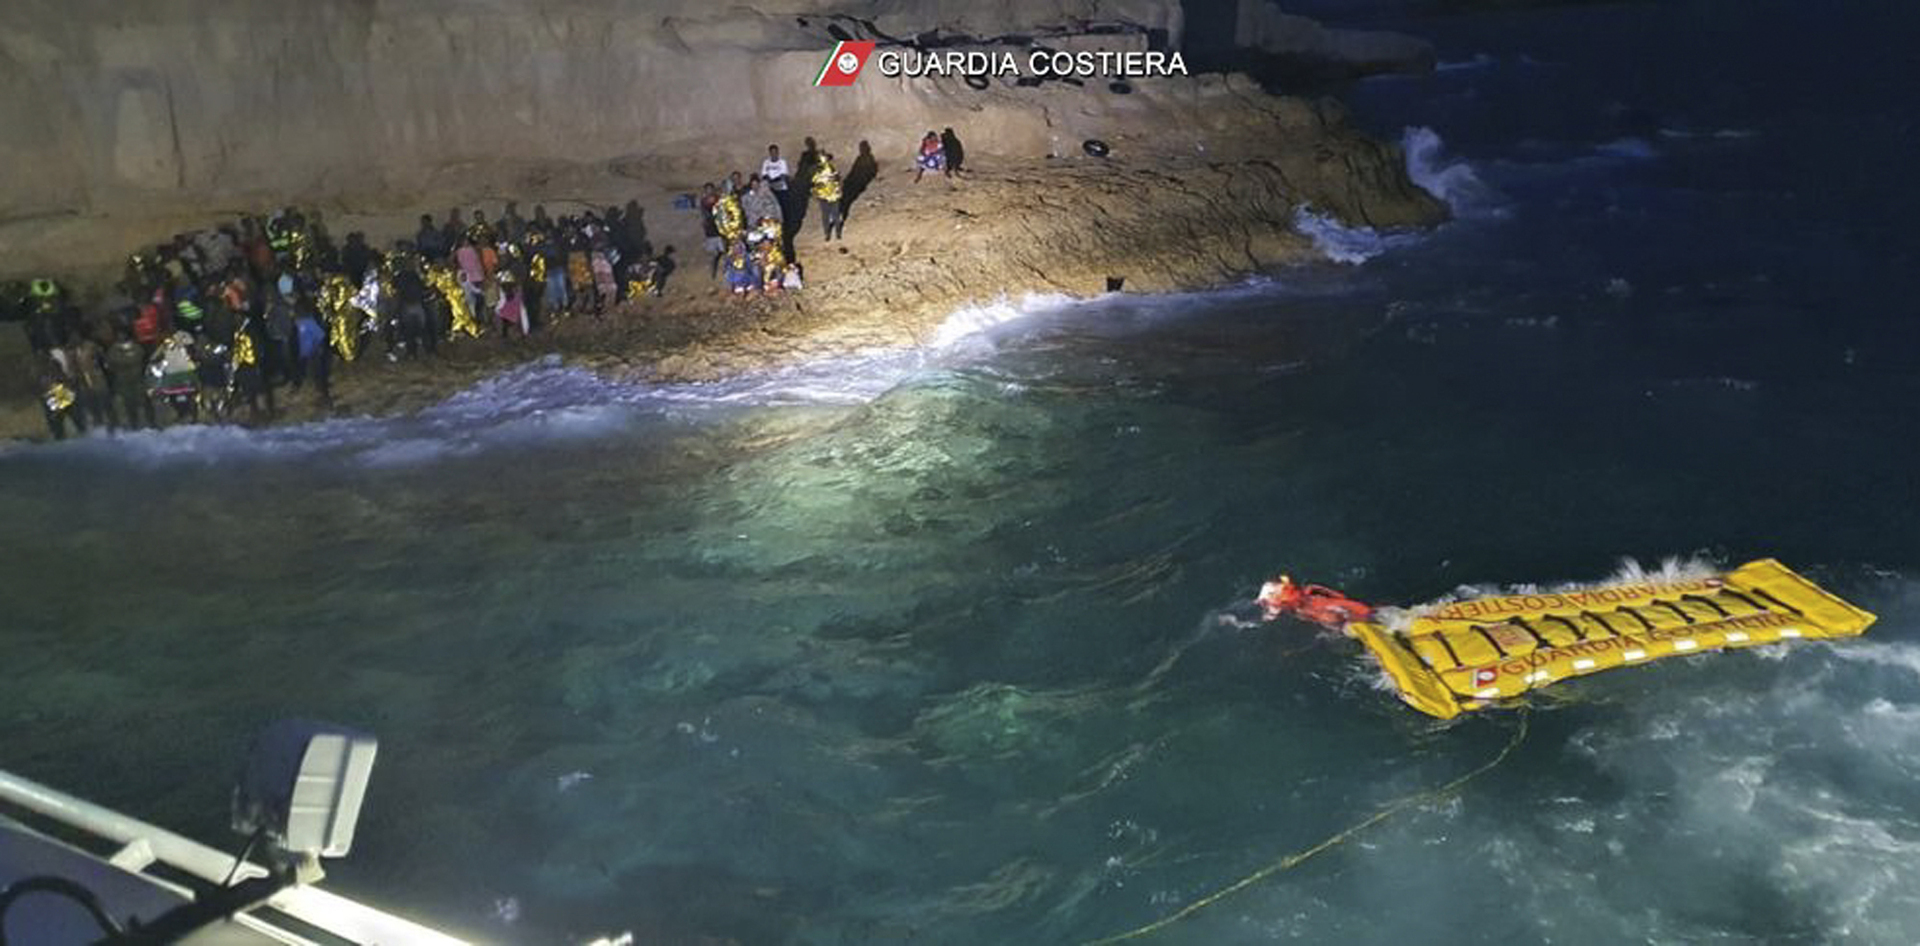 العثور على جثة رجل على مركب يقل مهاجرين قبالة جزر الكناري